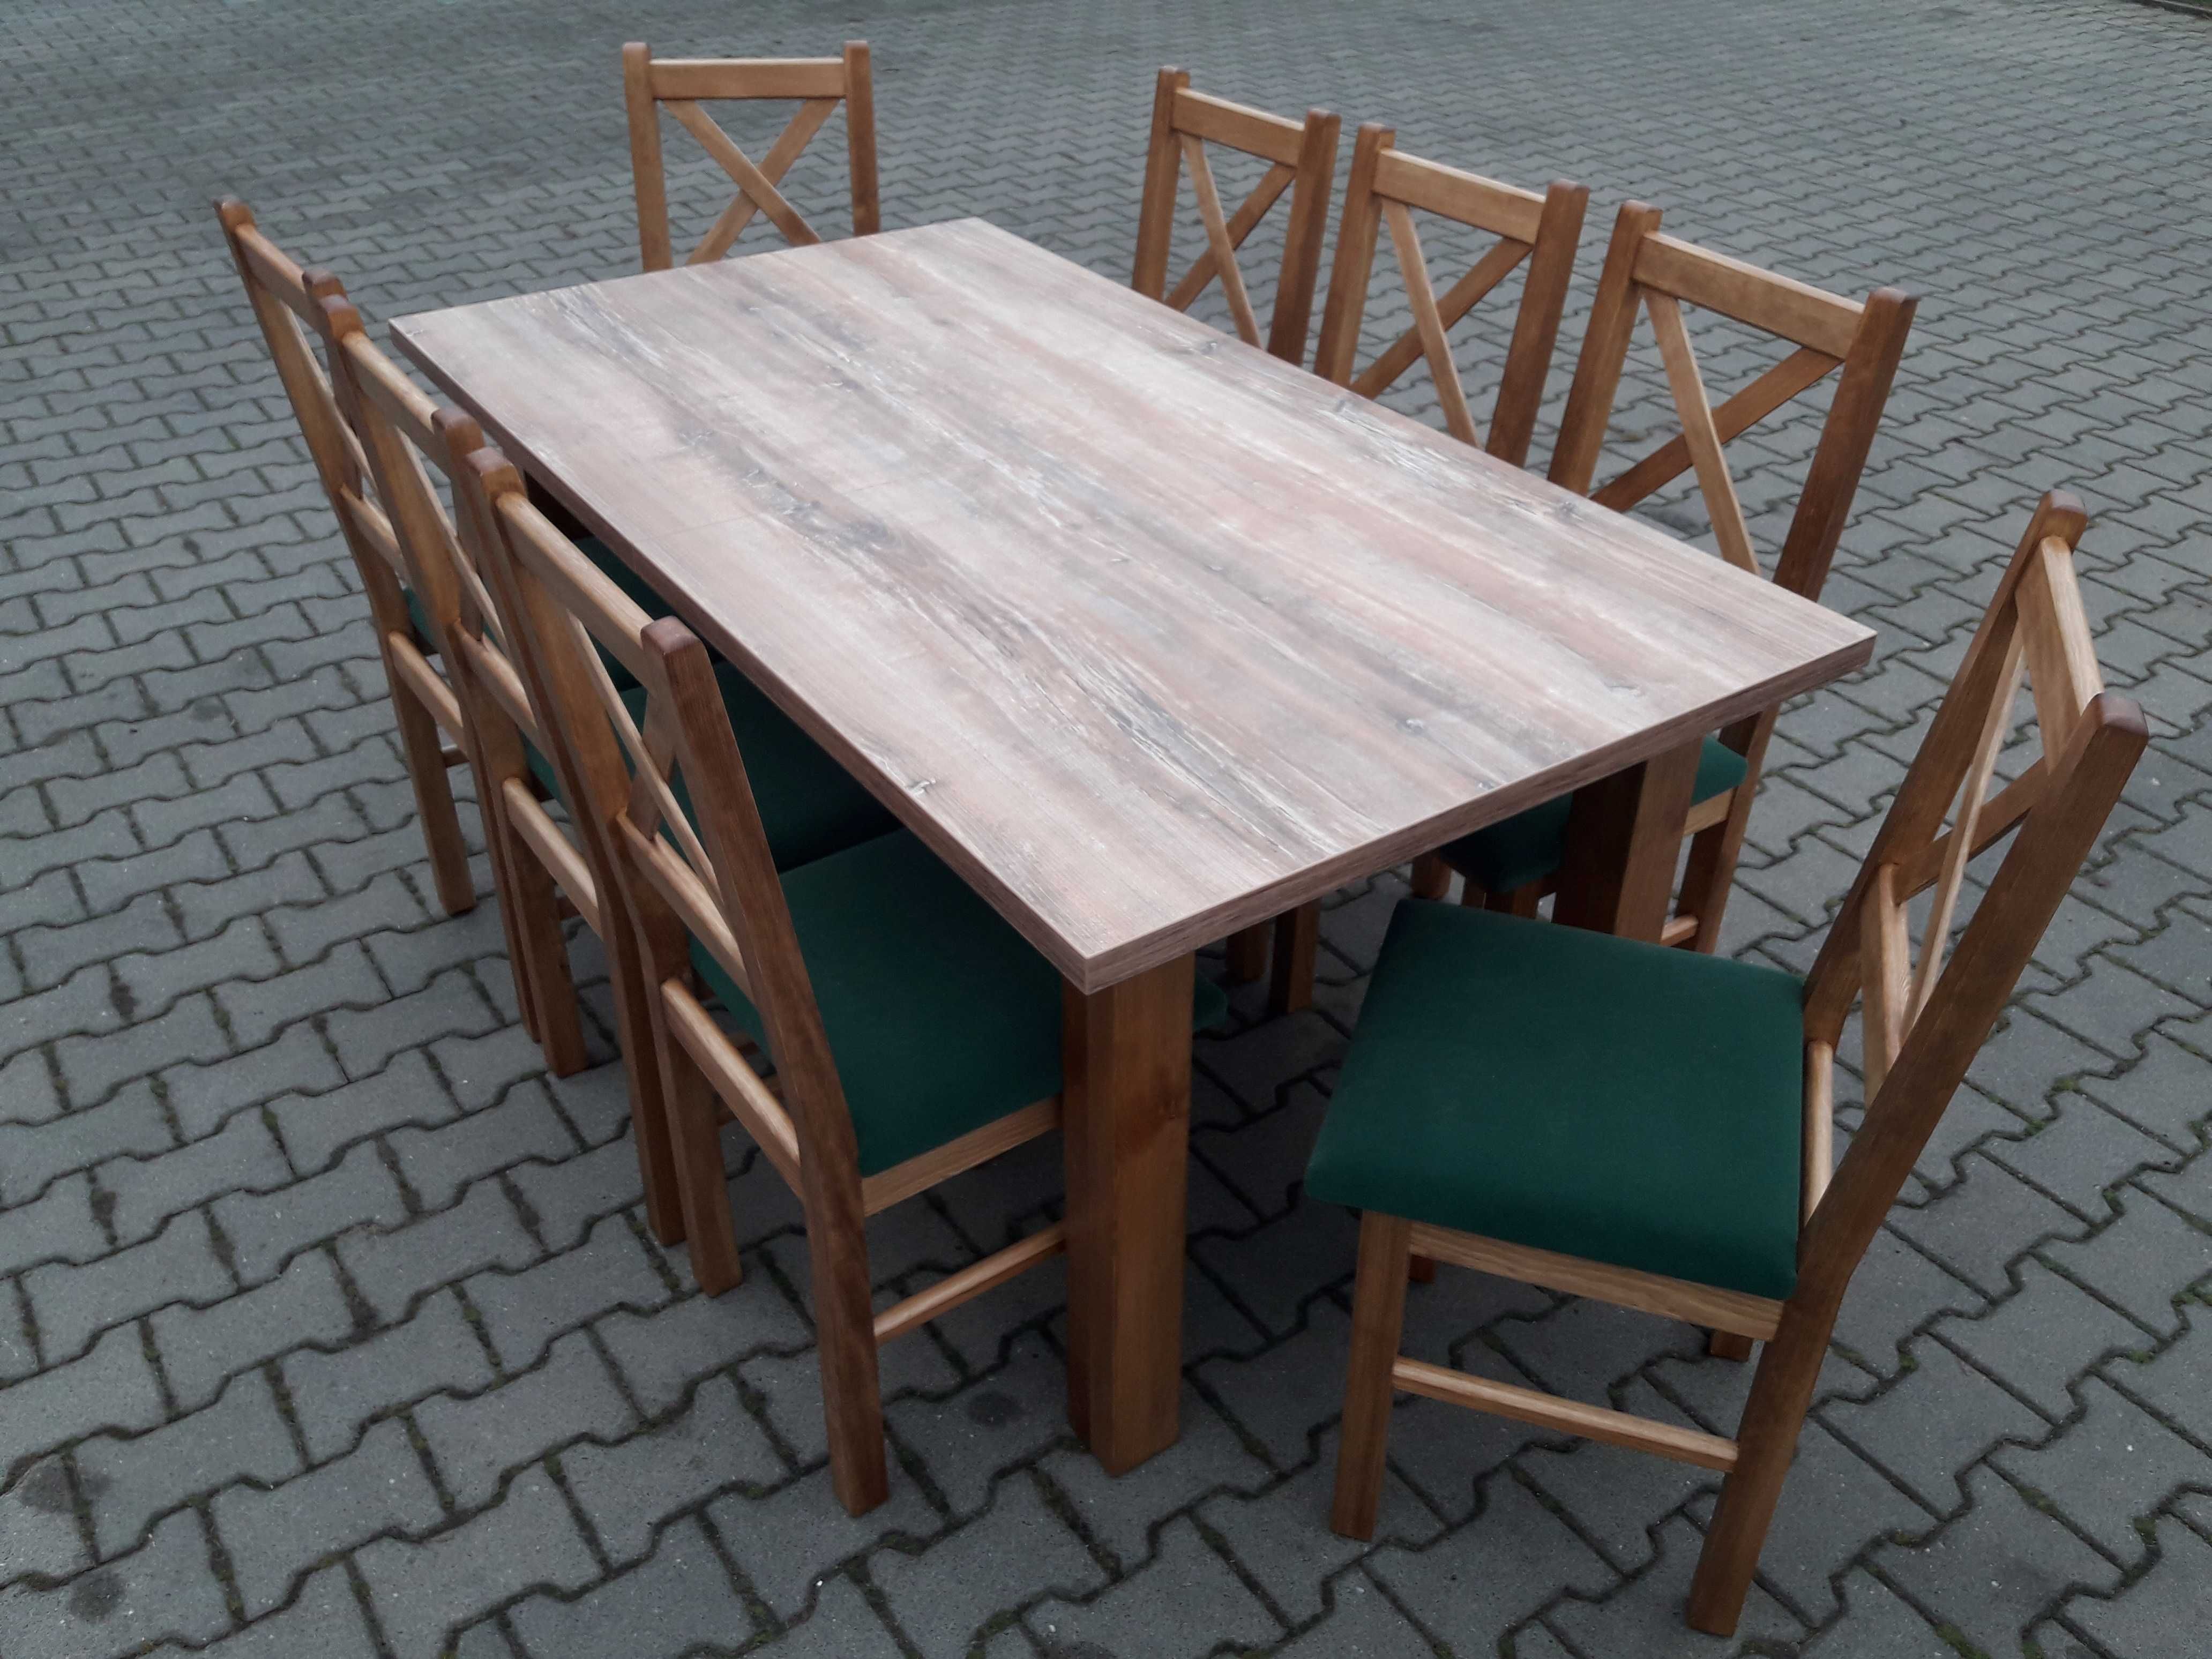 Stol 185/244x95+8 krzesel krzyzowe dab rustykal+blat drewno retro